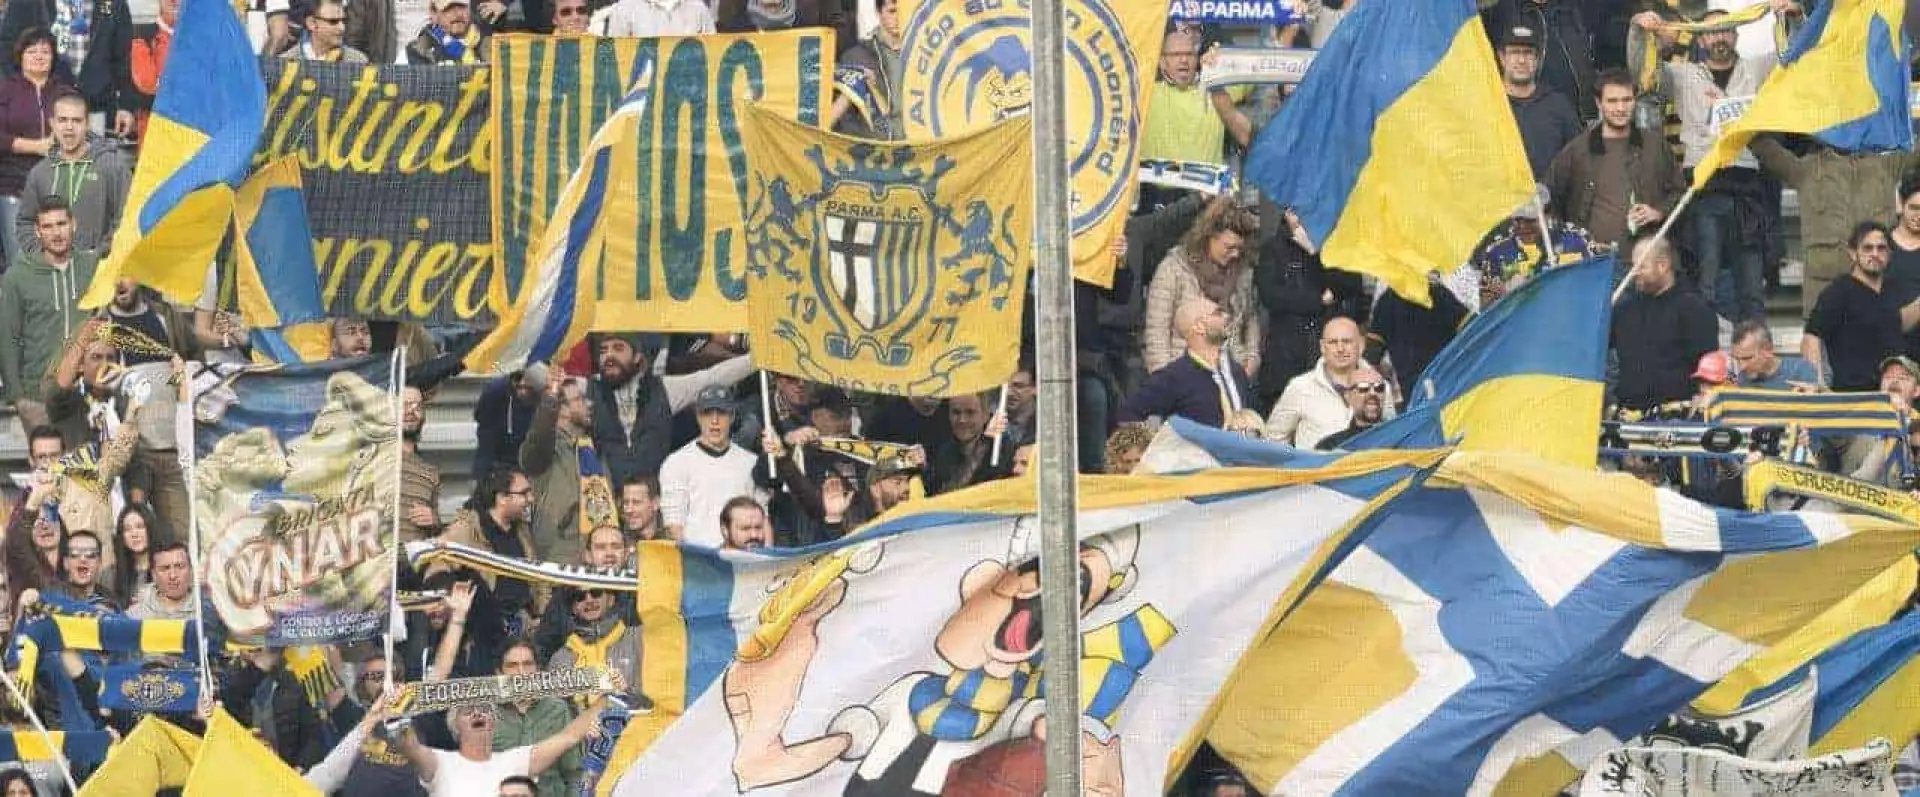 Parma fans